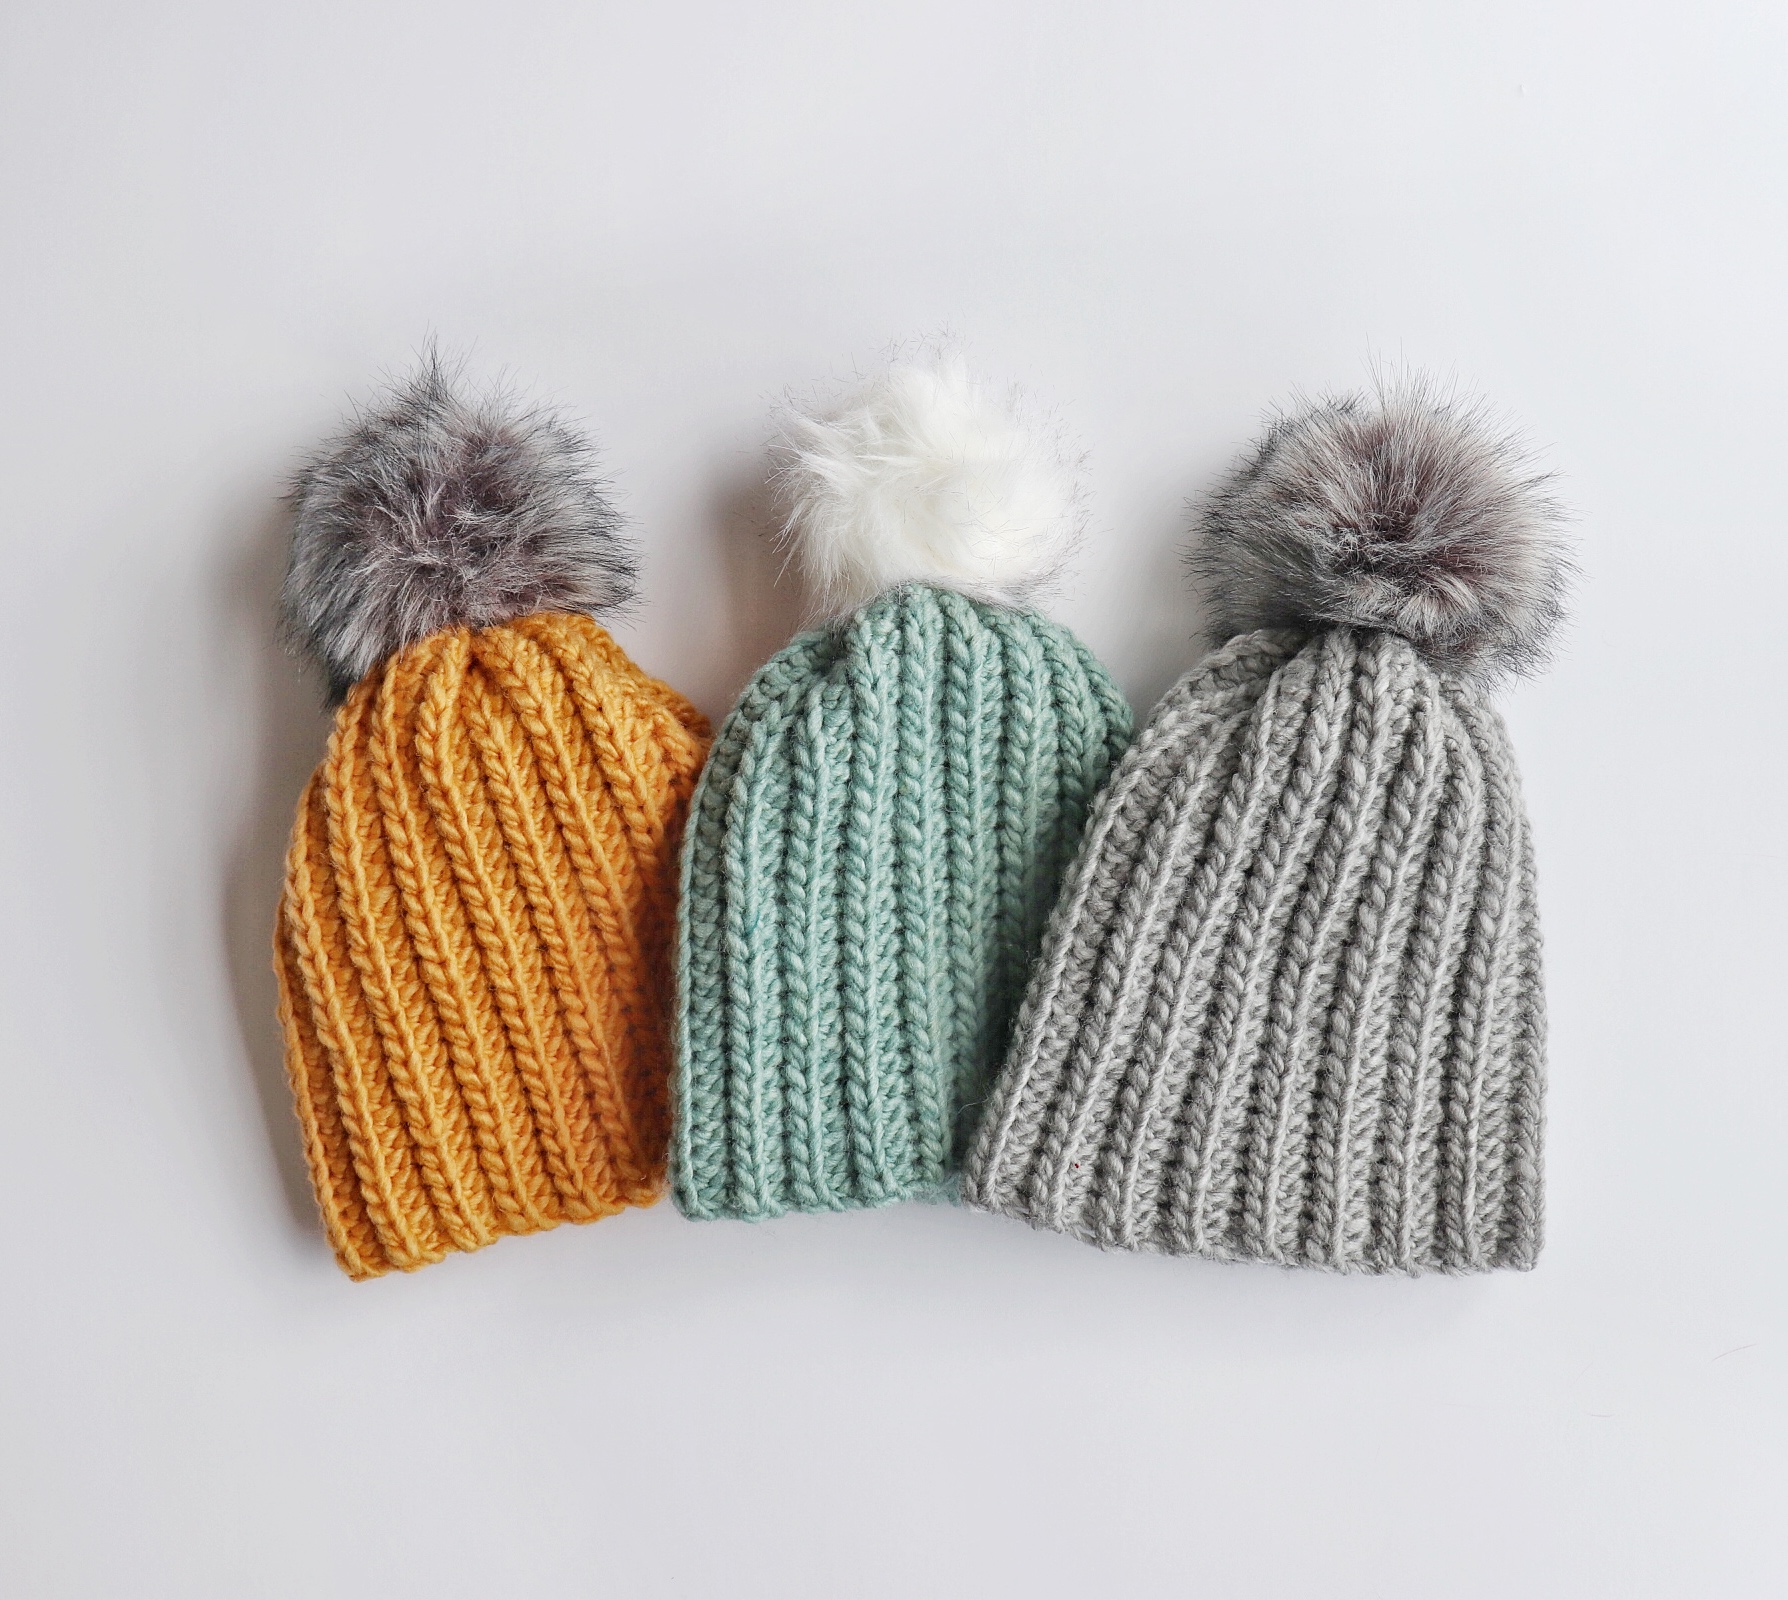 Crochet Beginner Winter Hats Daisy Farm Crafts